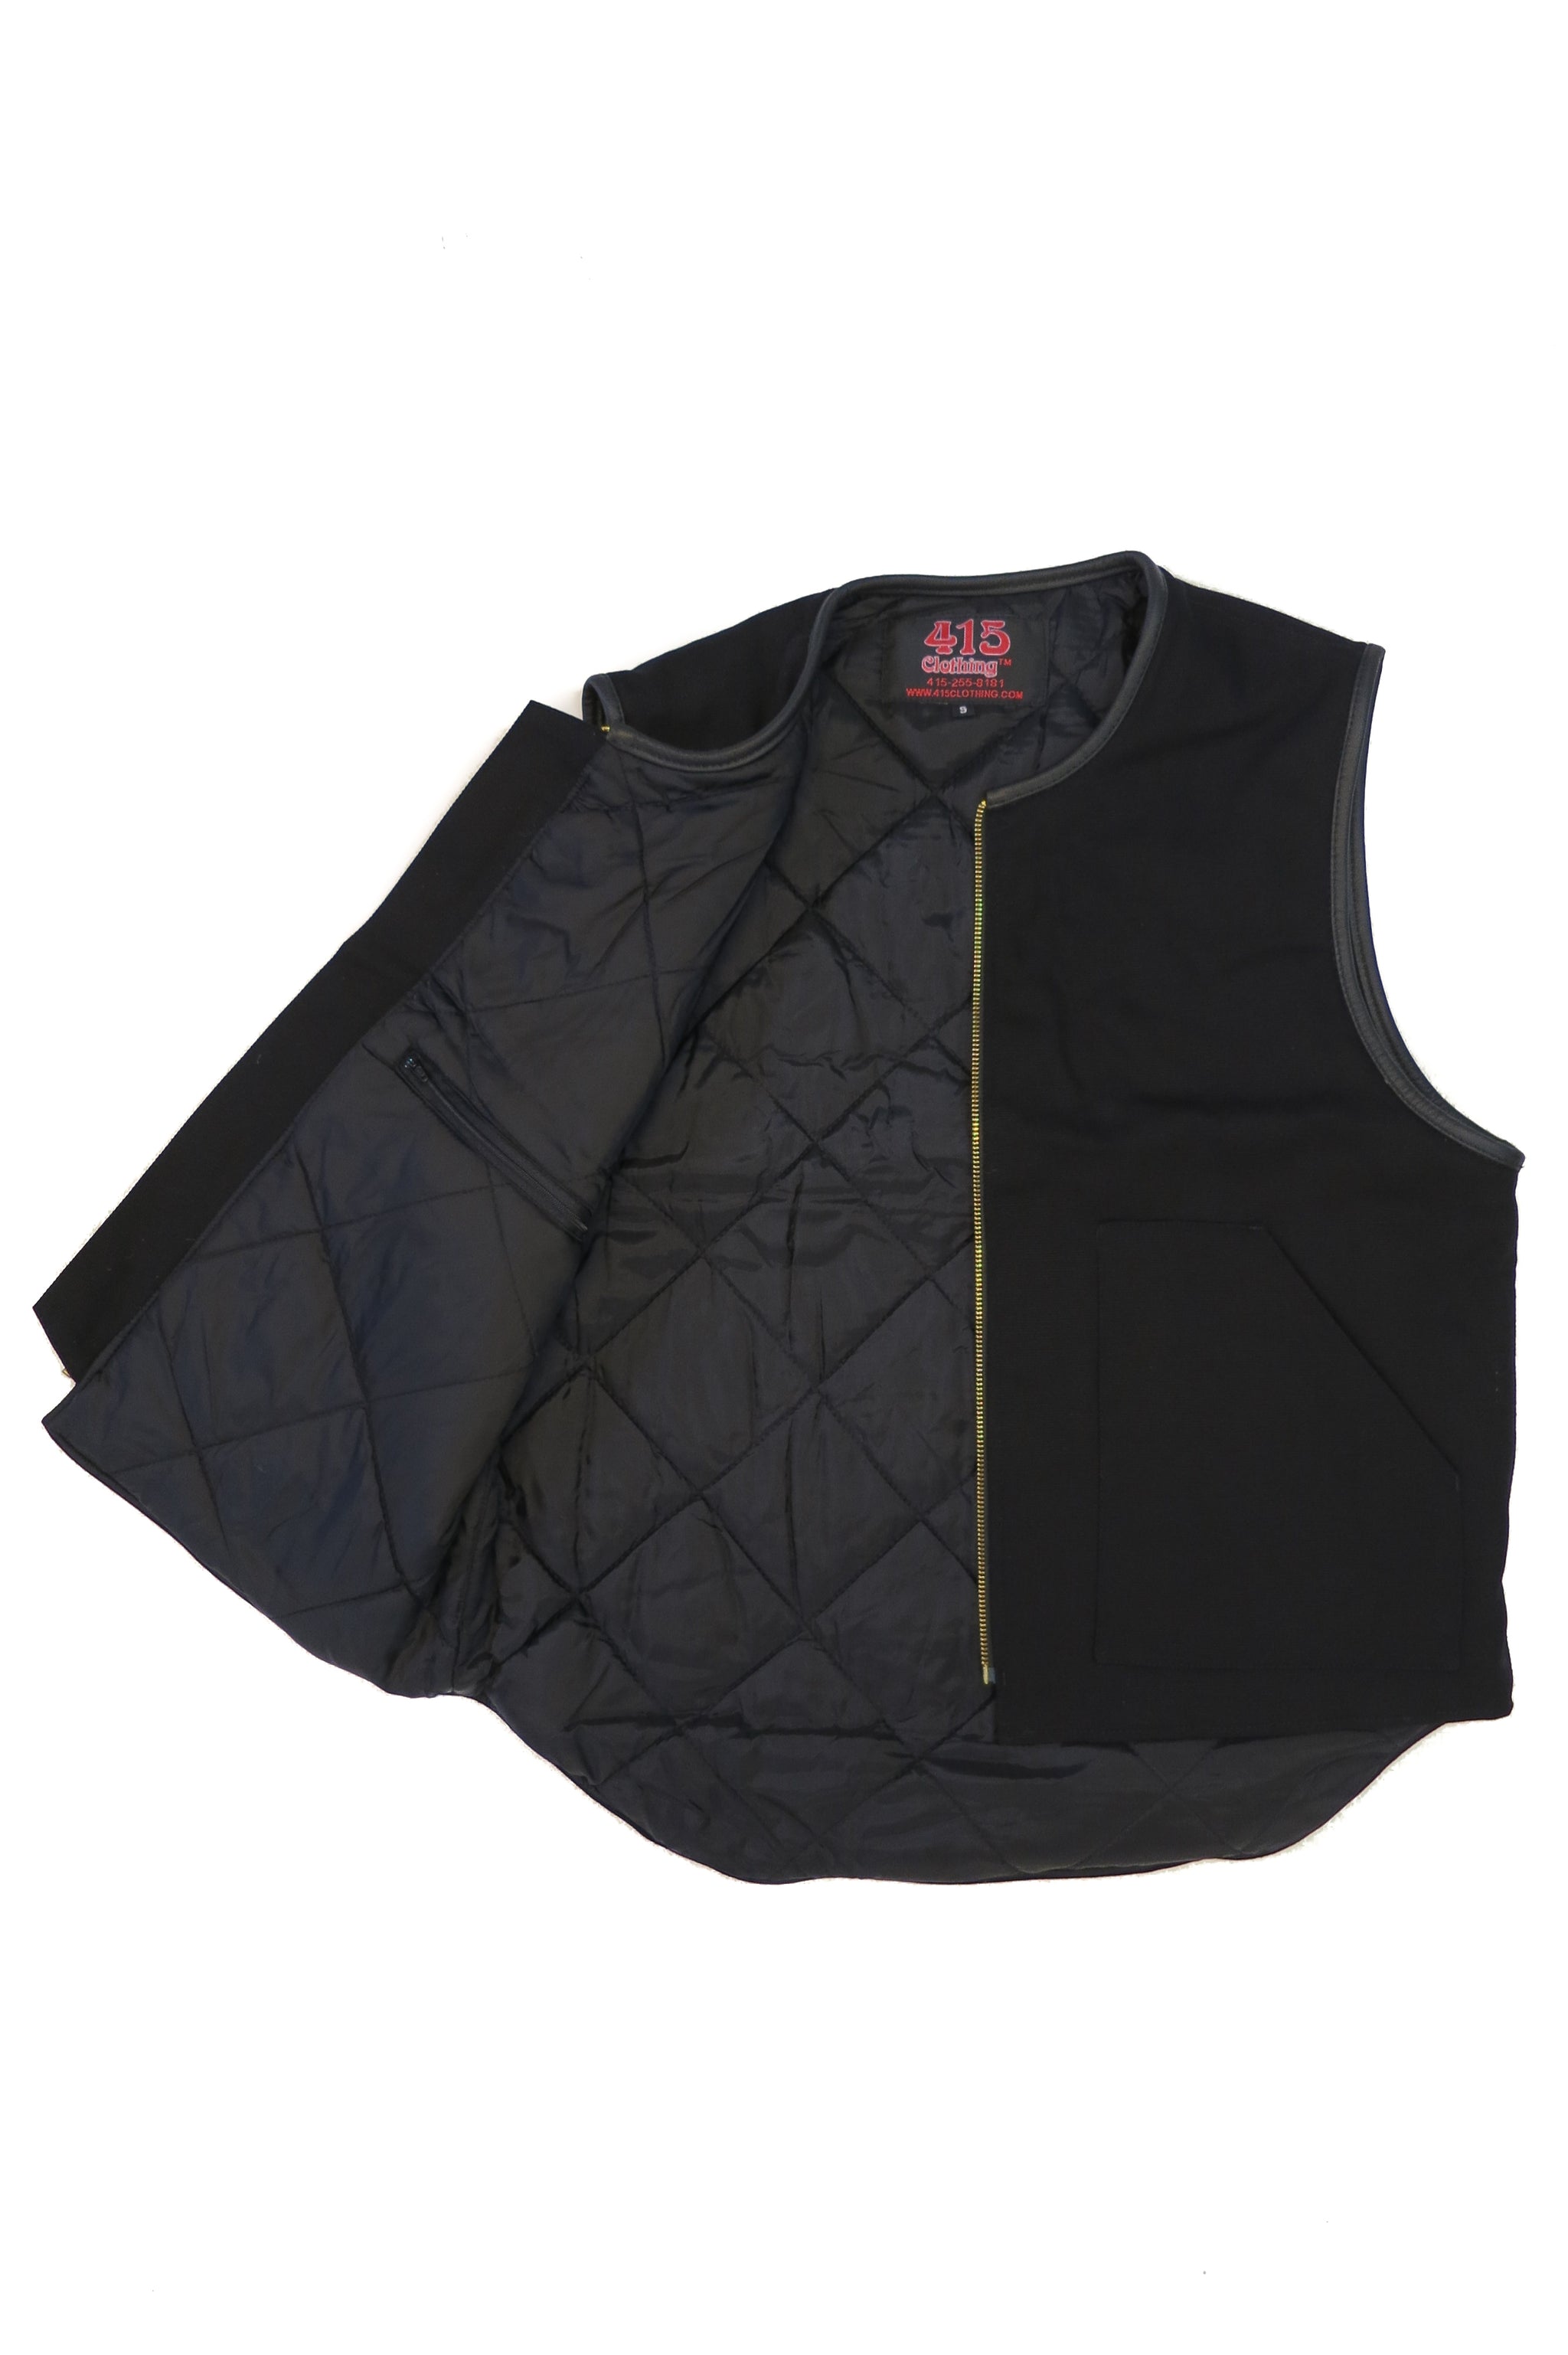 415 Leather 3/4 Sleeve Vest/Jacket - 415 Clothing, Inc.